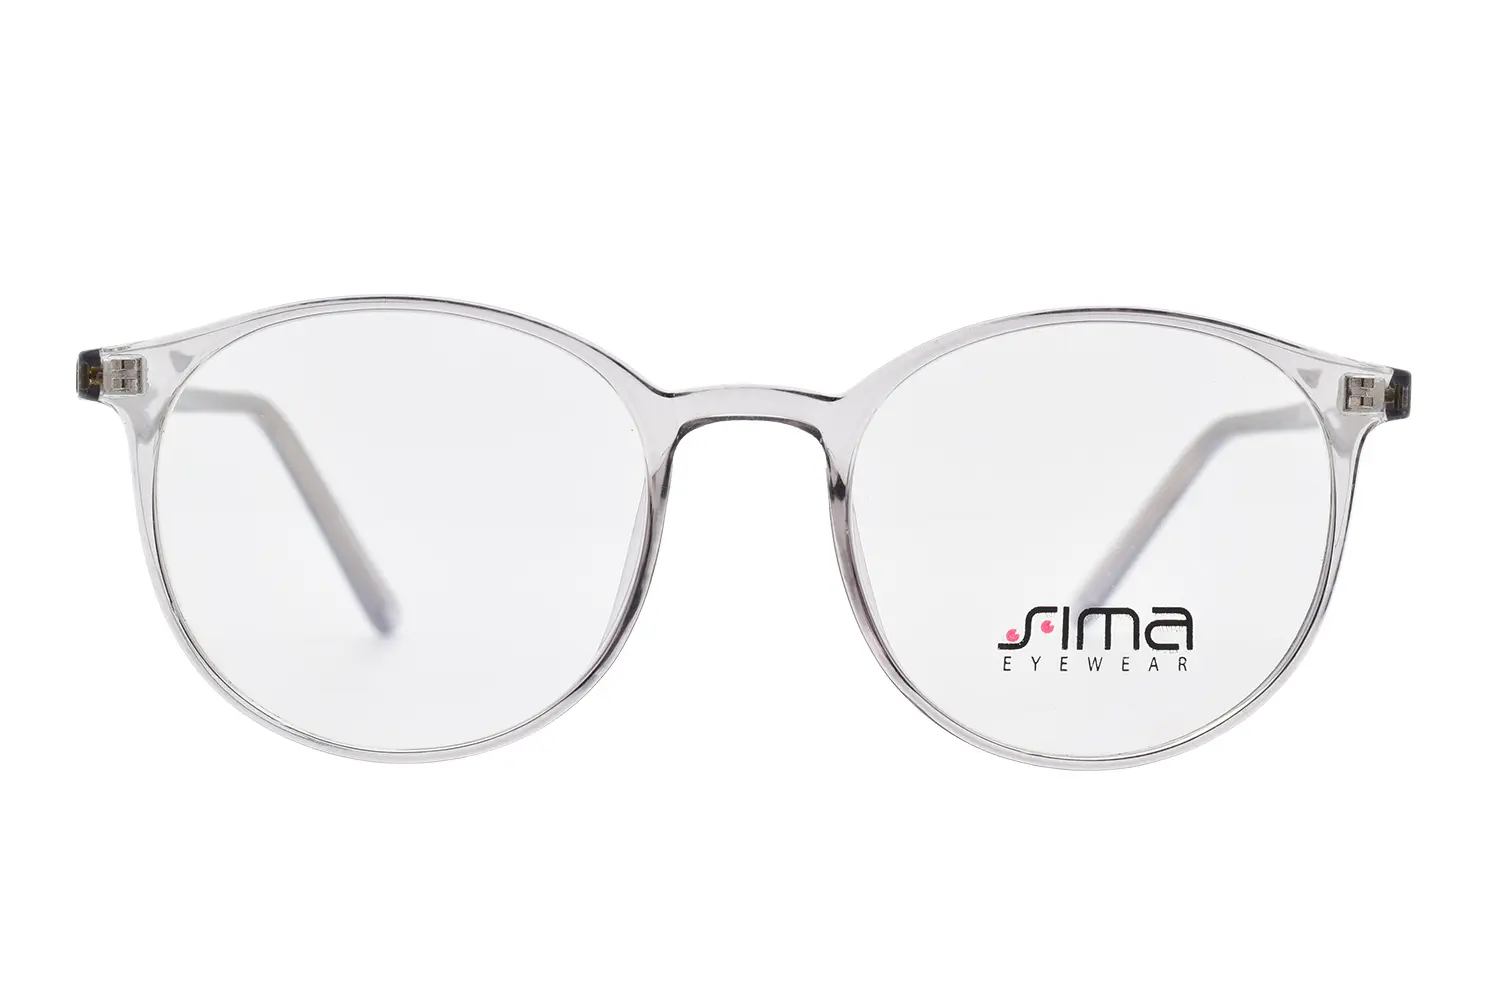  عینک طبی SIMA مدل 8243 C3 - دکترعینک